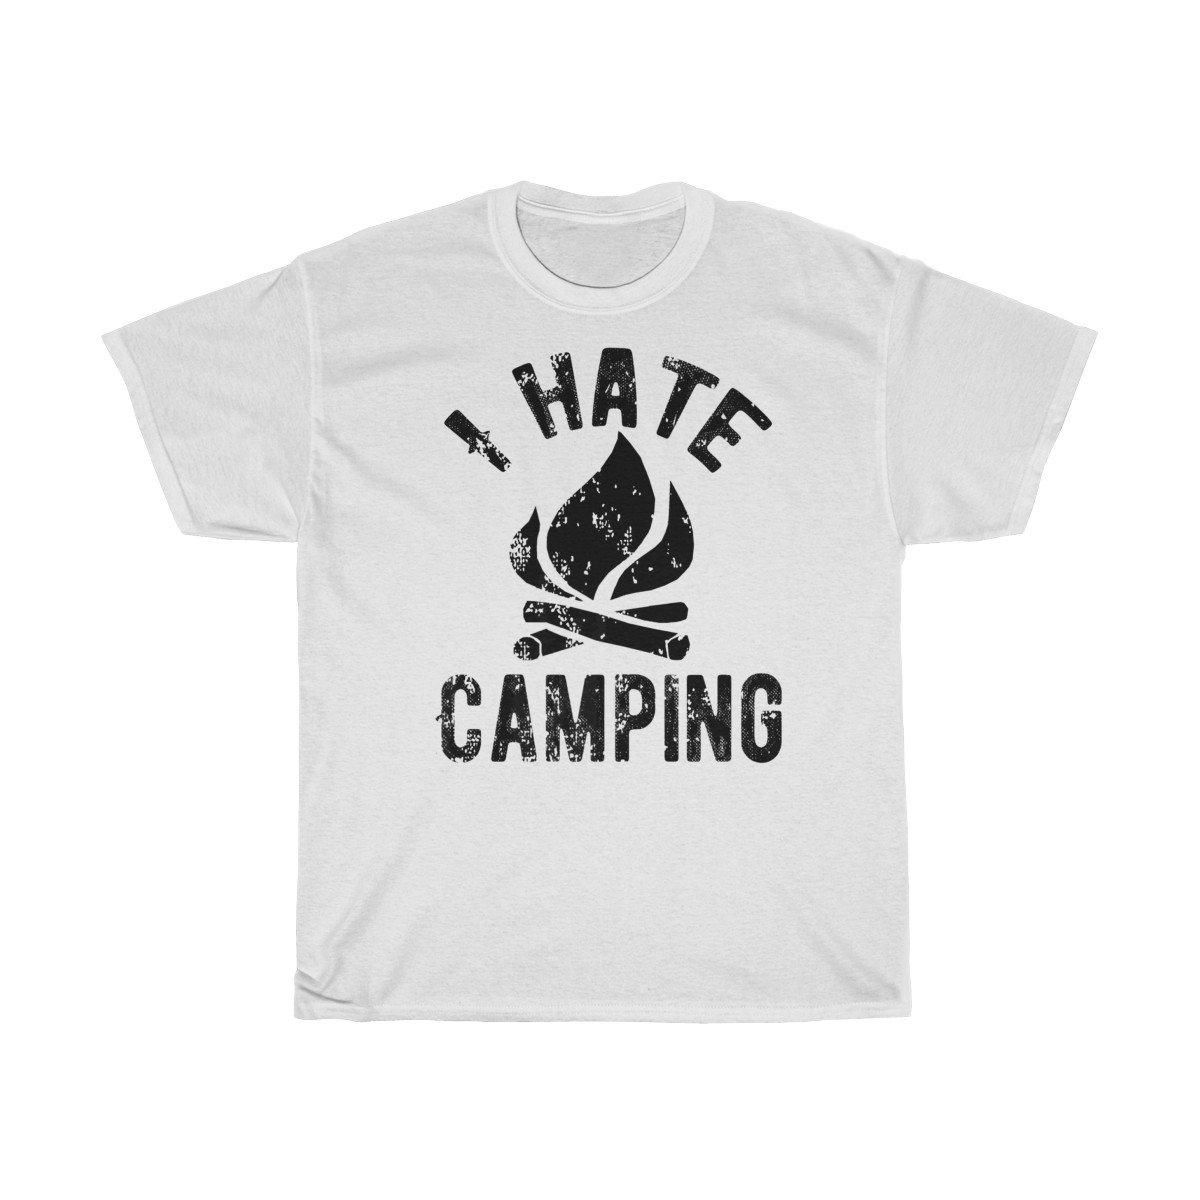 I hate Camping Tshirt PAN2TS0251